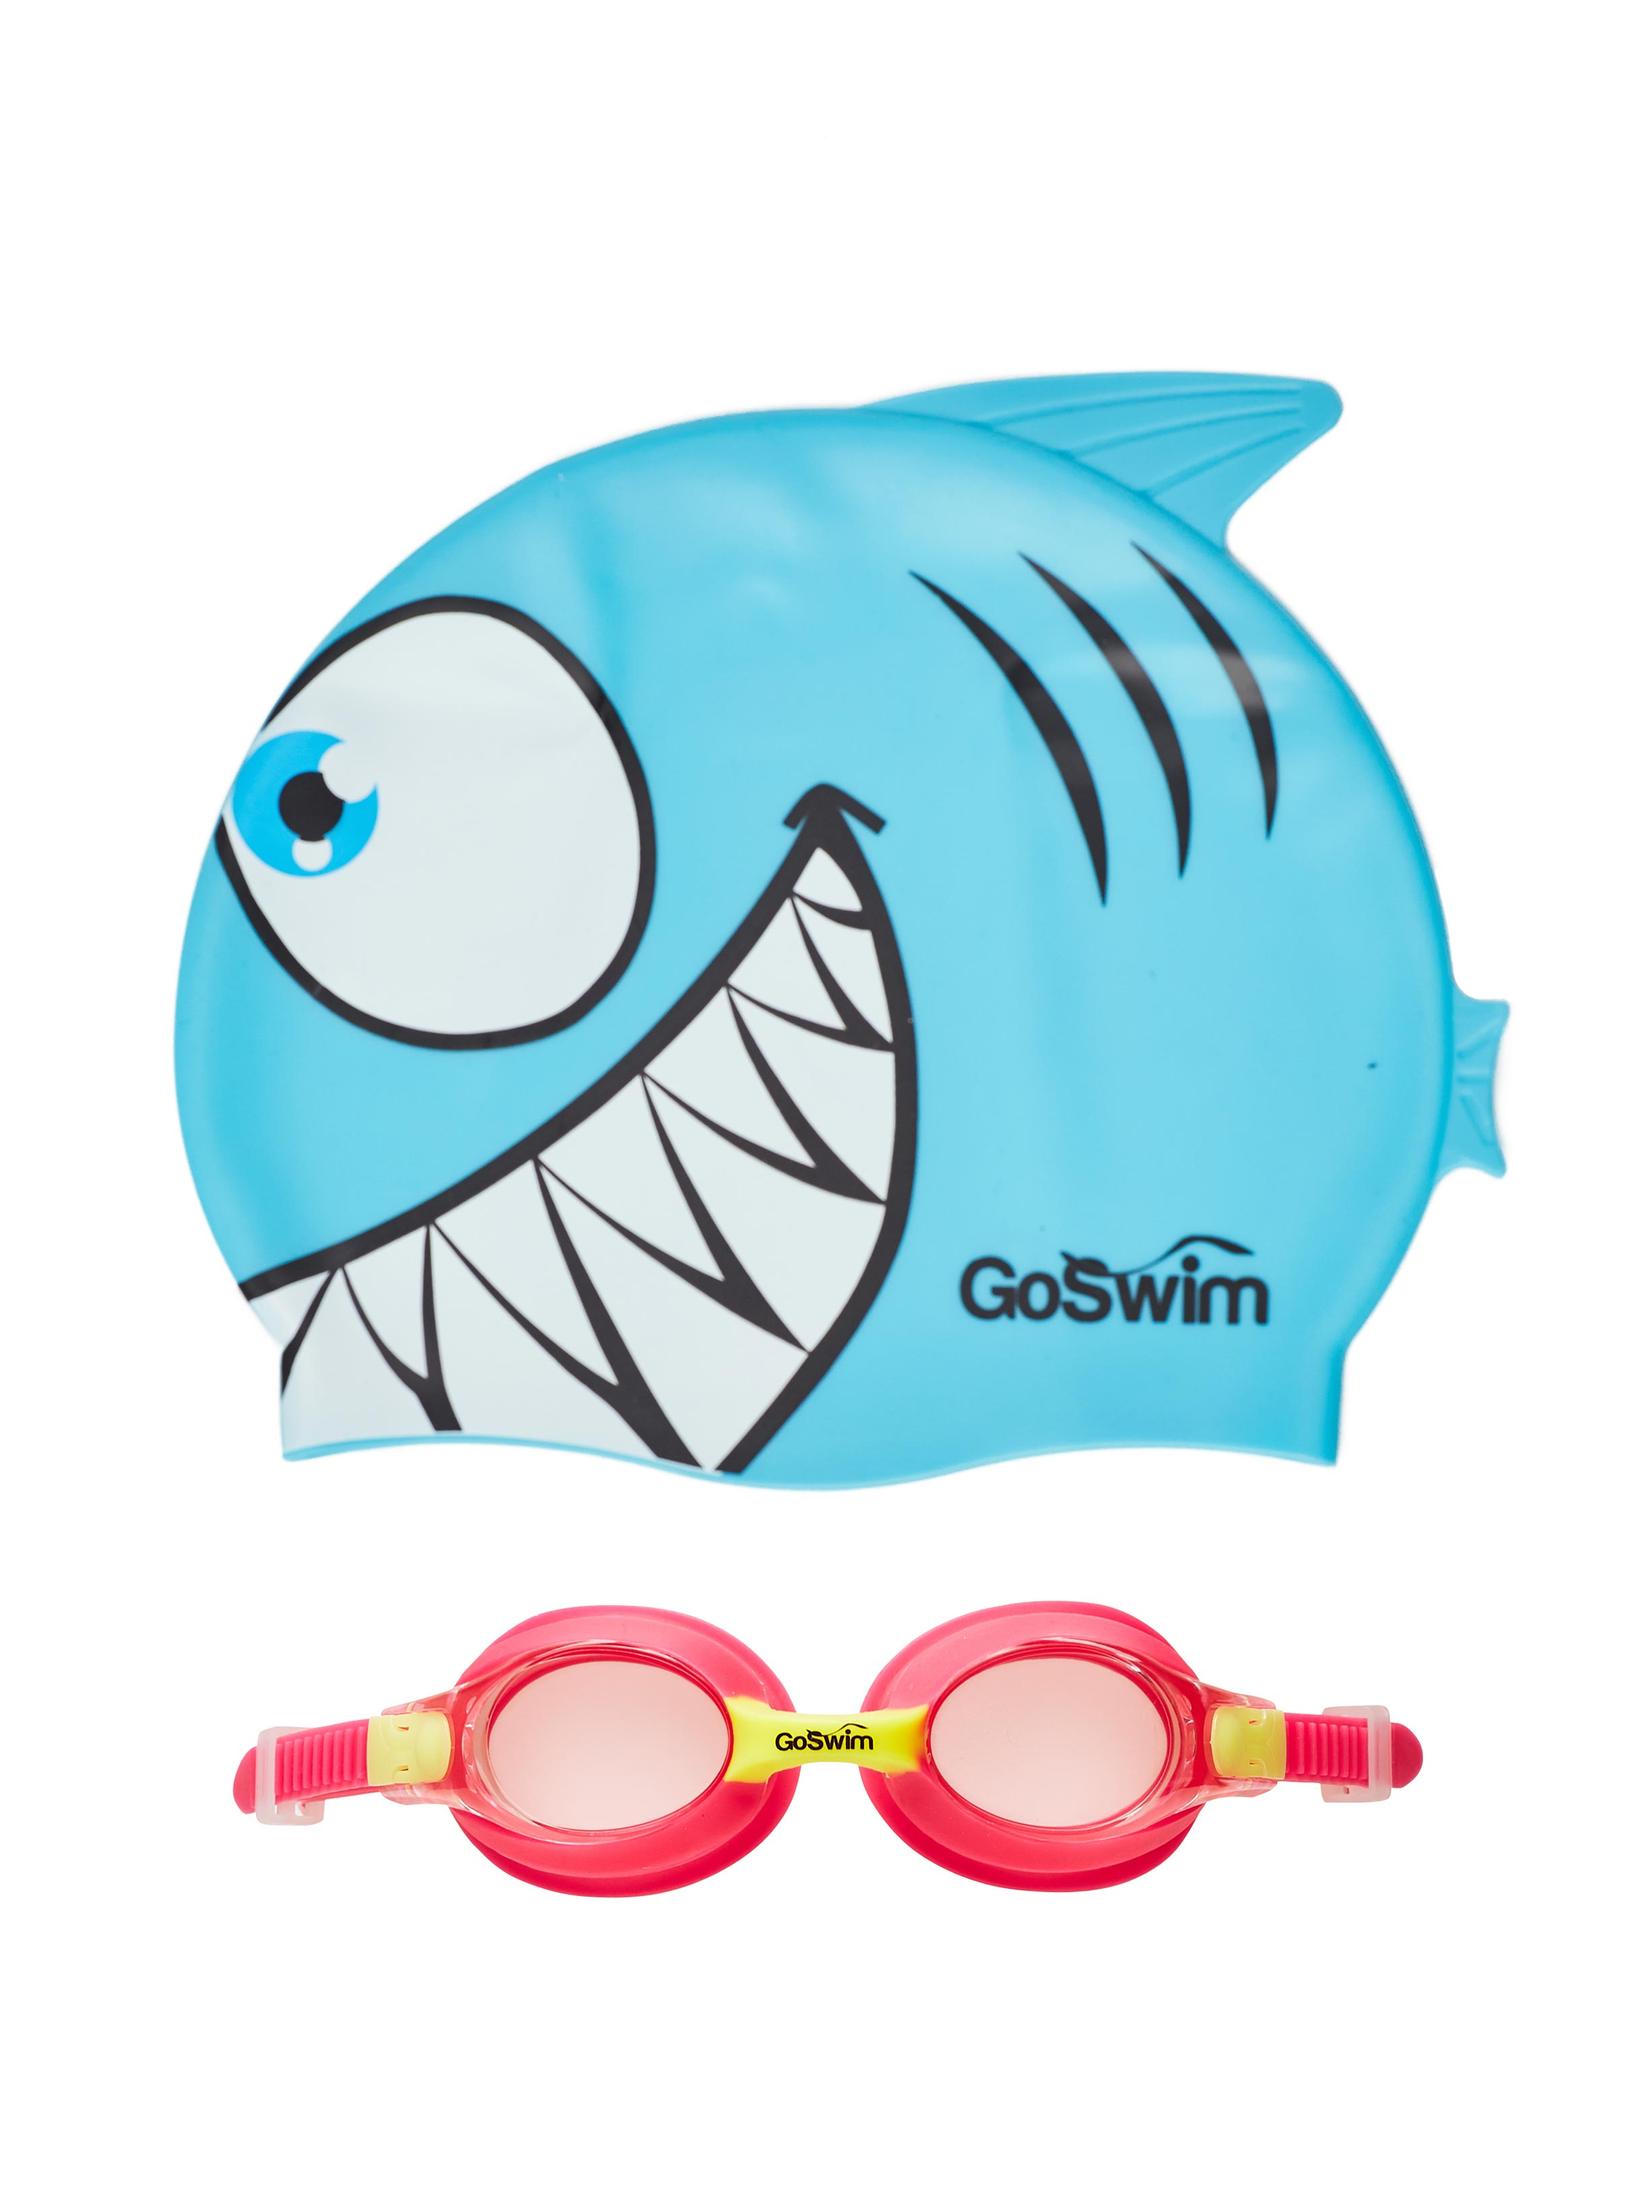 GO SWIM Dečije naočare i kapa za plivanje plavo-crvene